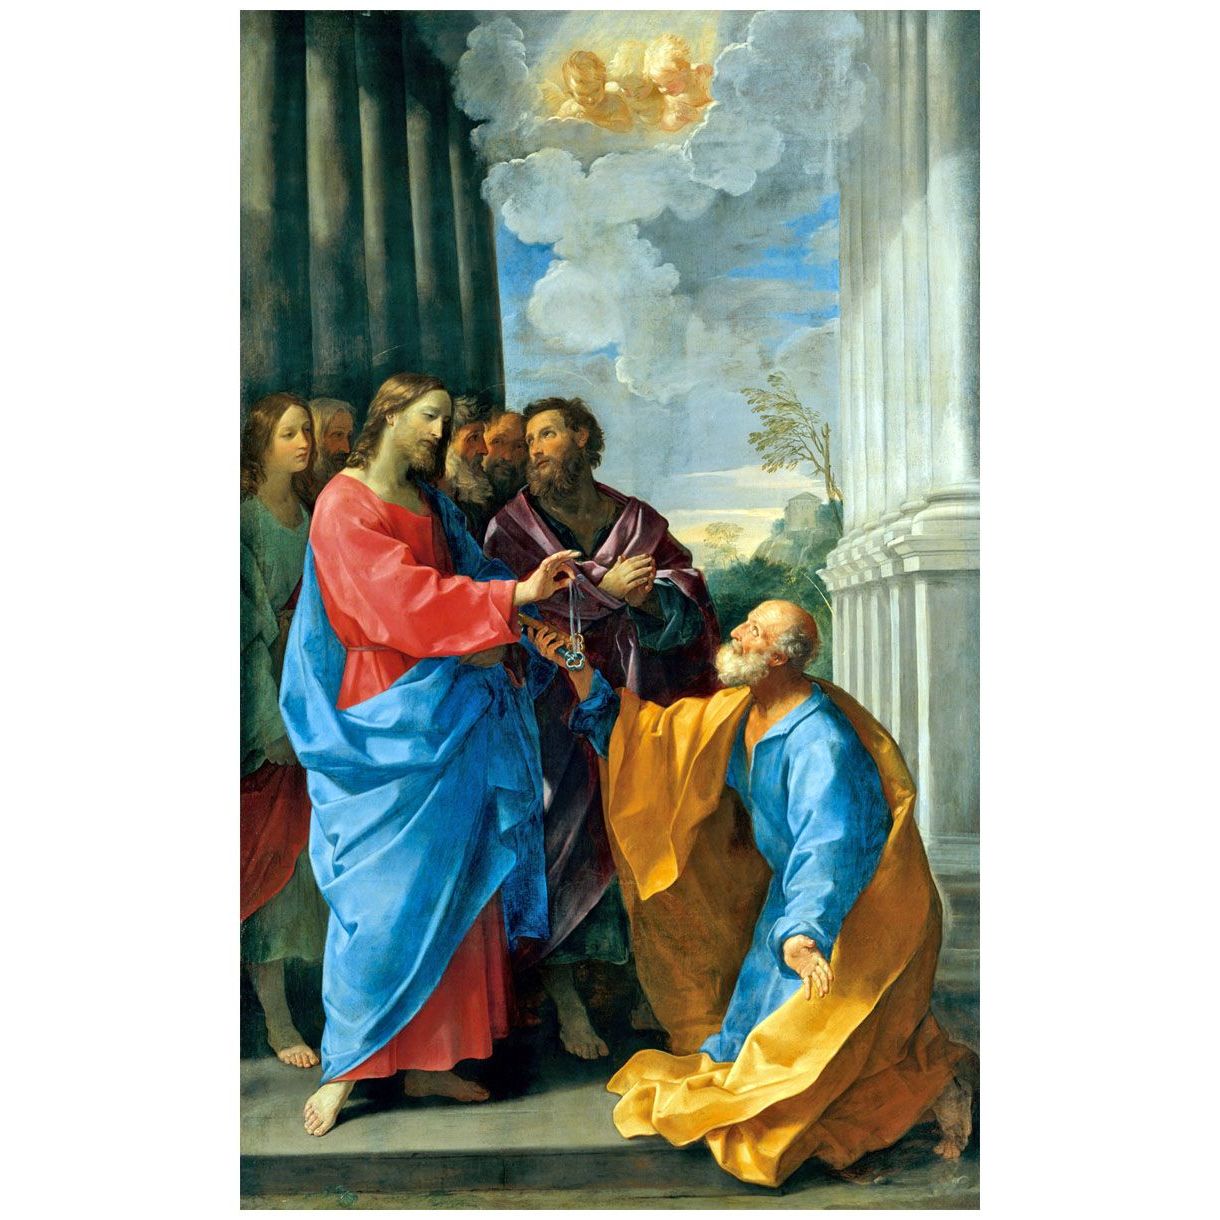 Guido Reni. Consegna delle chiavi. 1625. Louvre